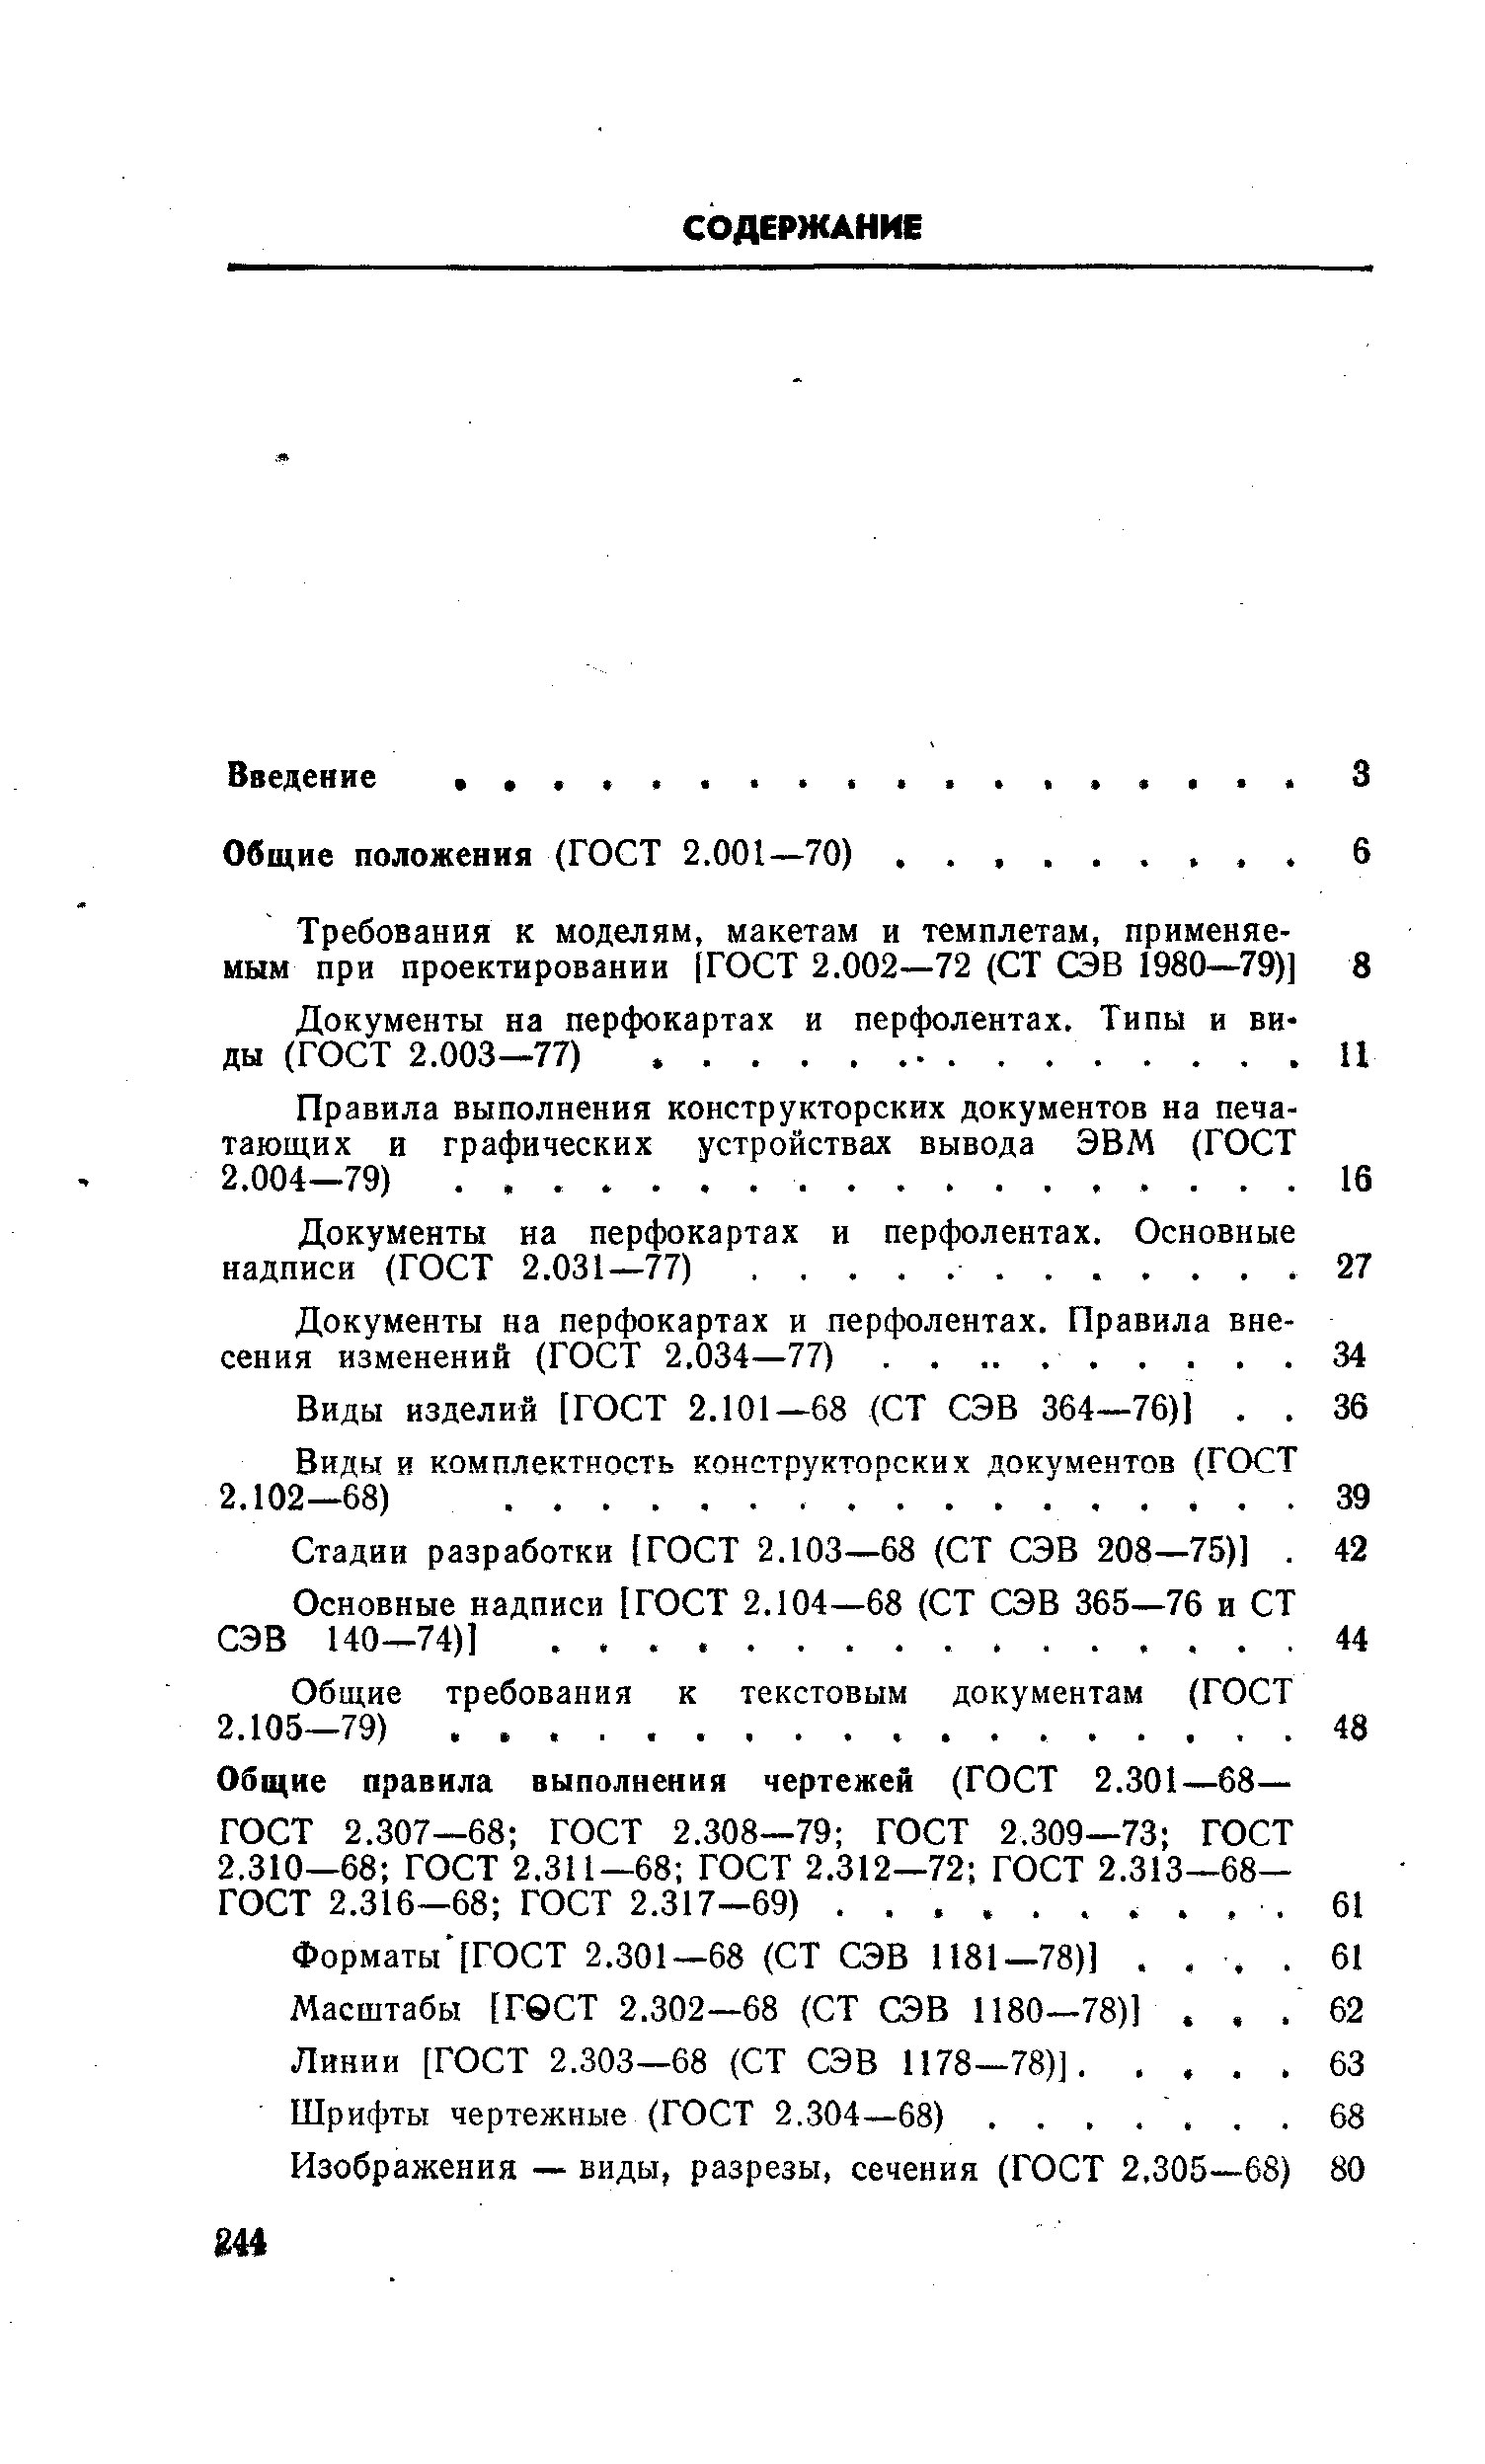 Шрифты чертежные (ГОСТ 2.304—68).
